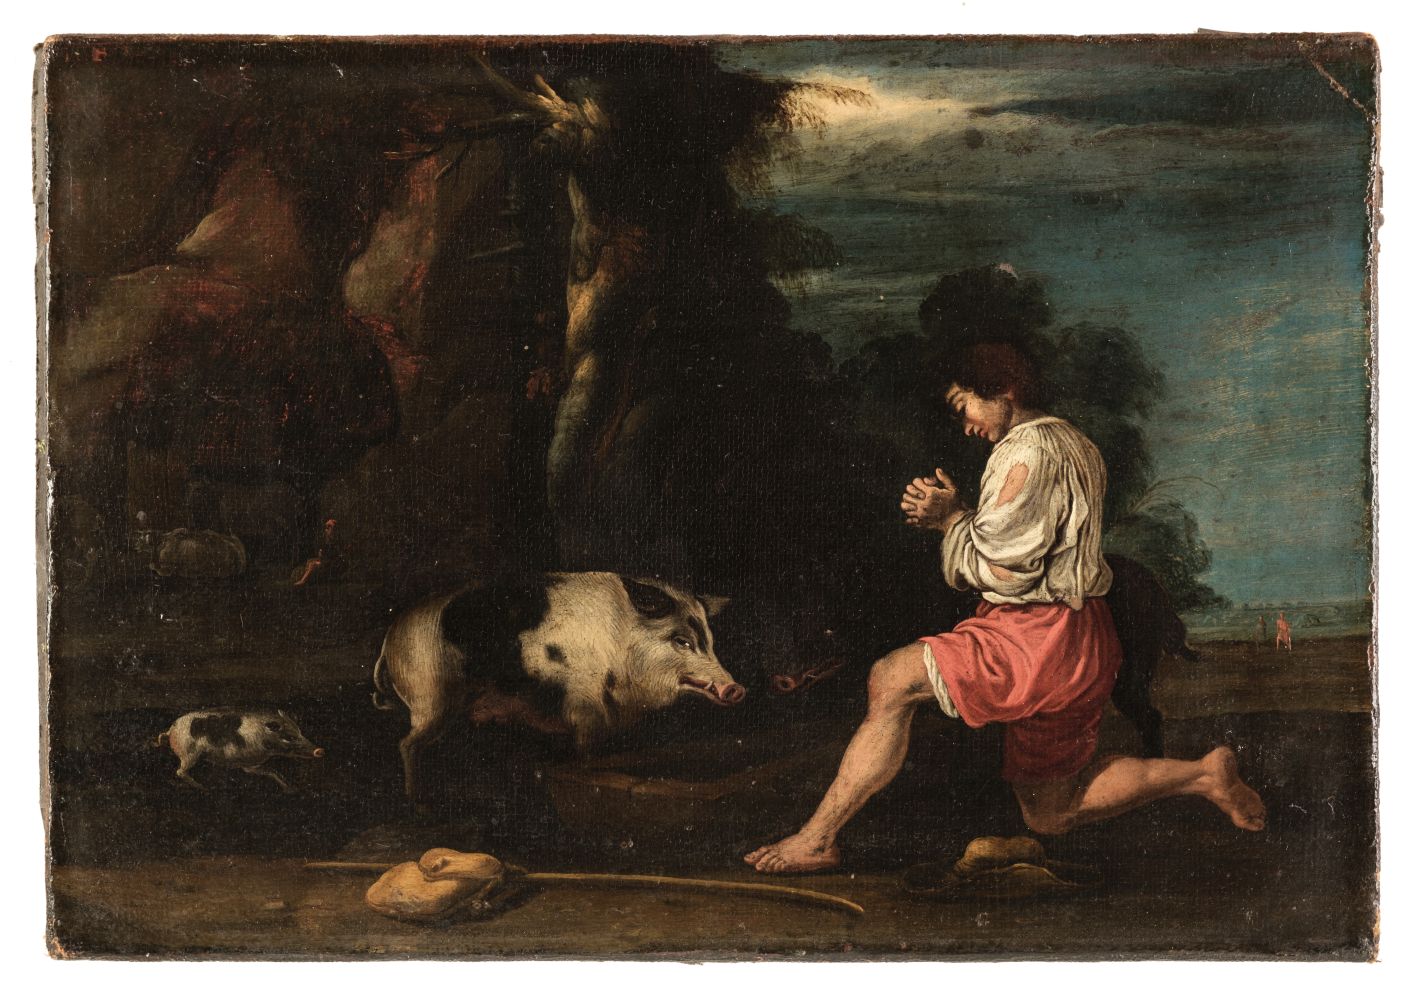 Both (Jan, 1615/1618-1652, Follower of). Rocky landscape with swineherd, oil on canvas